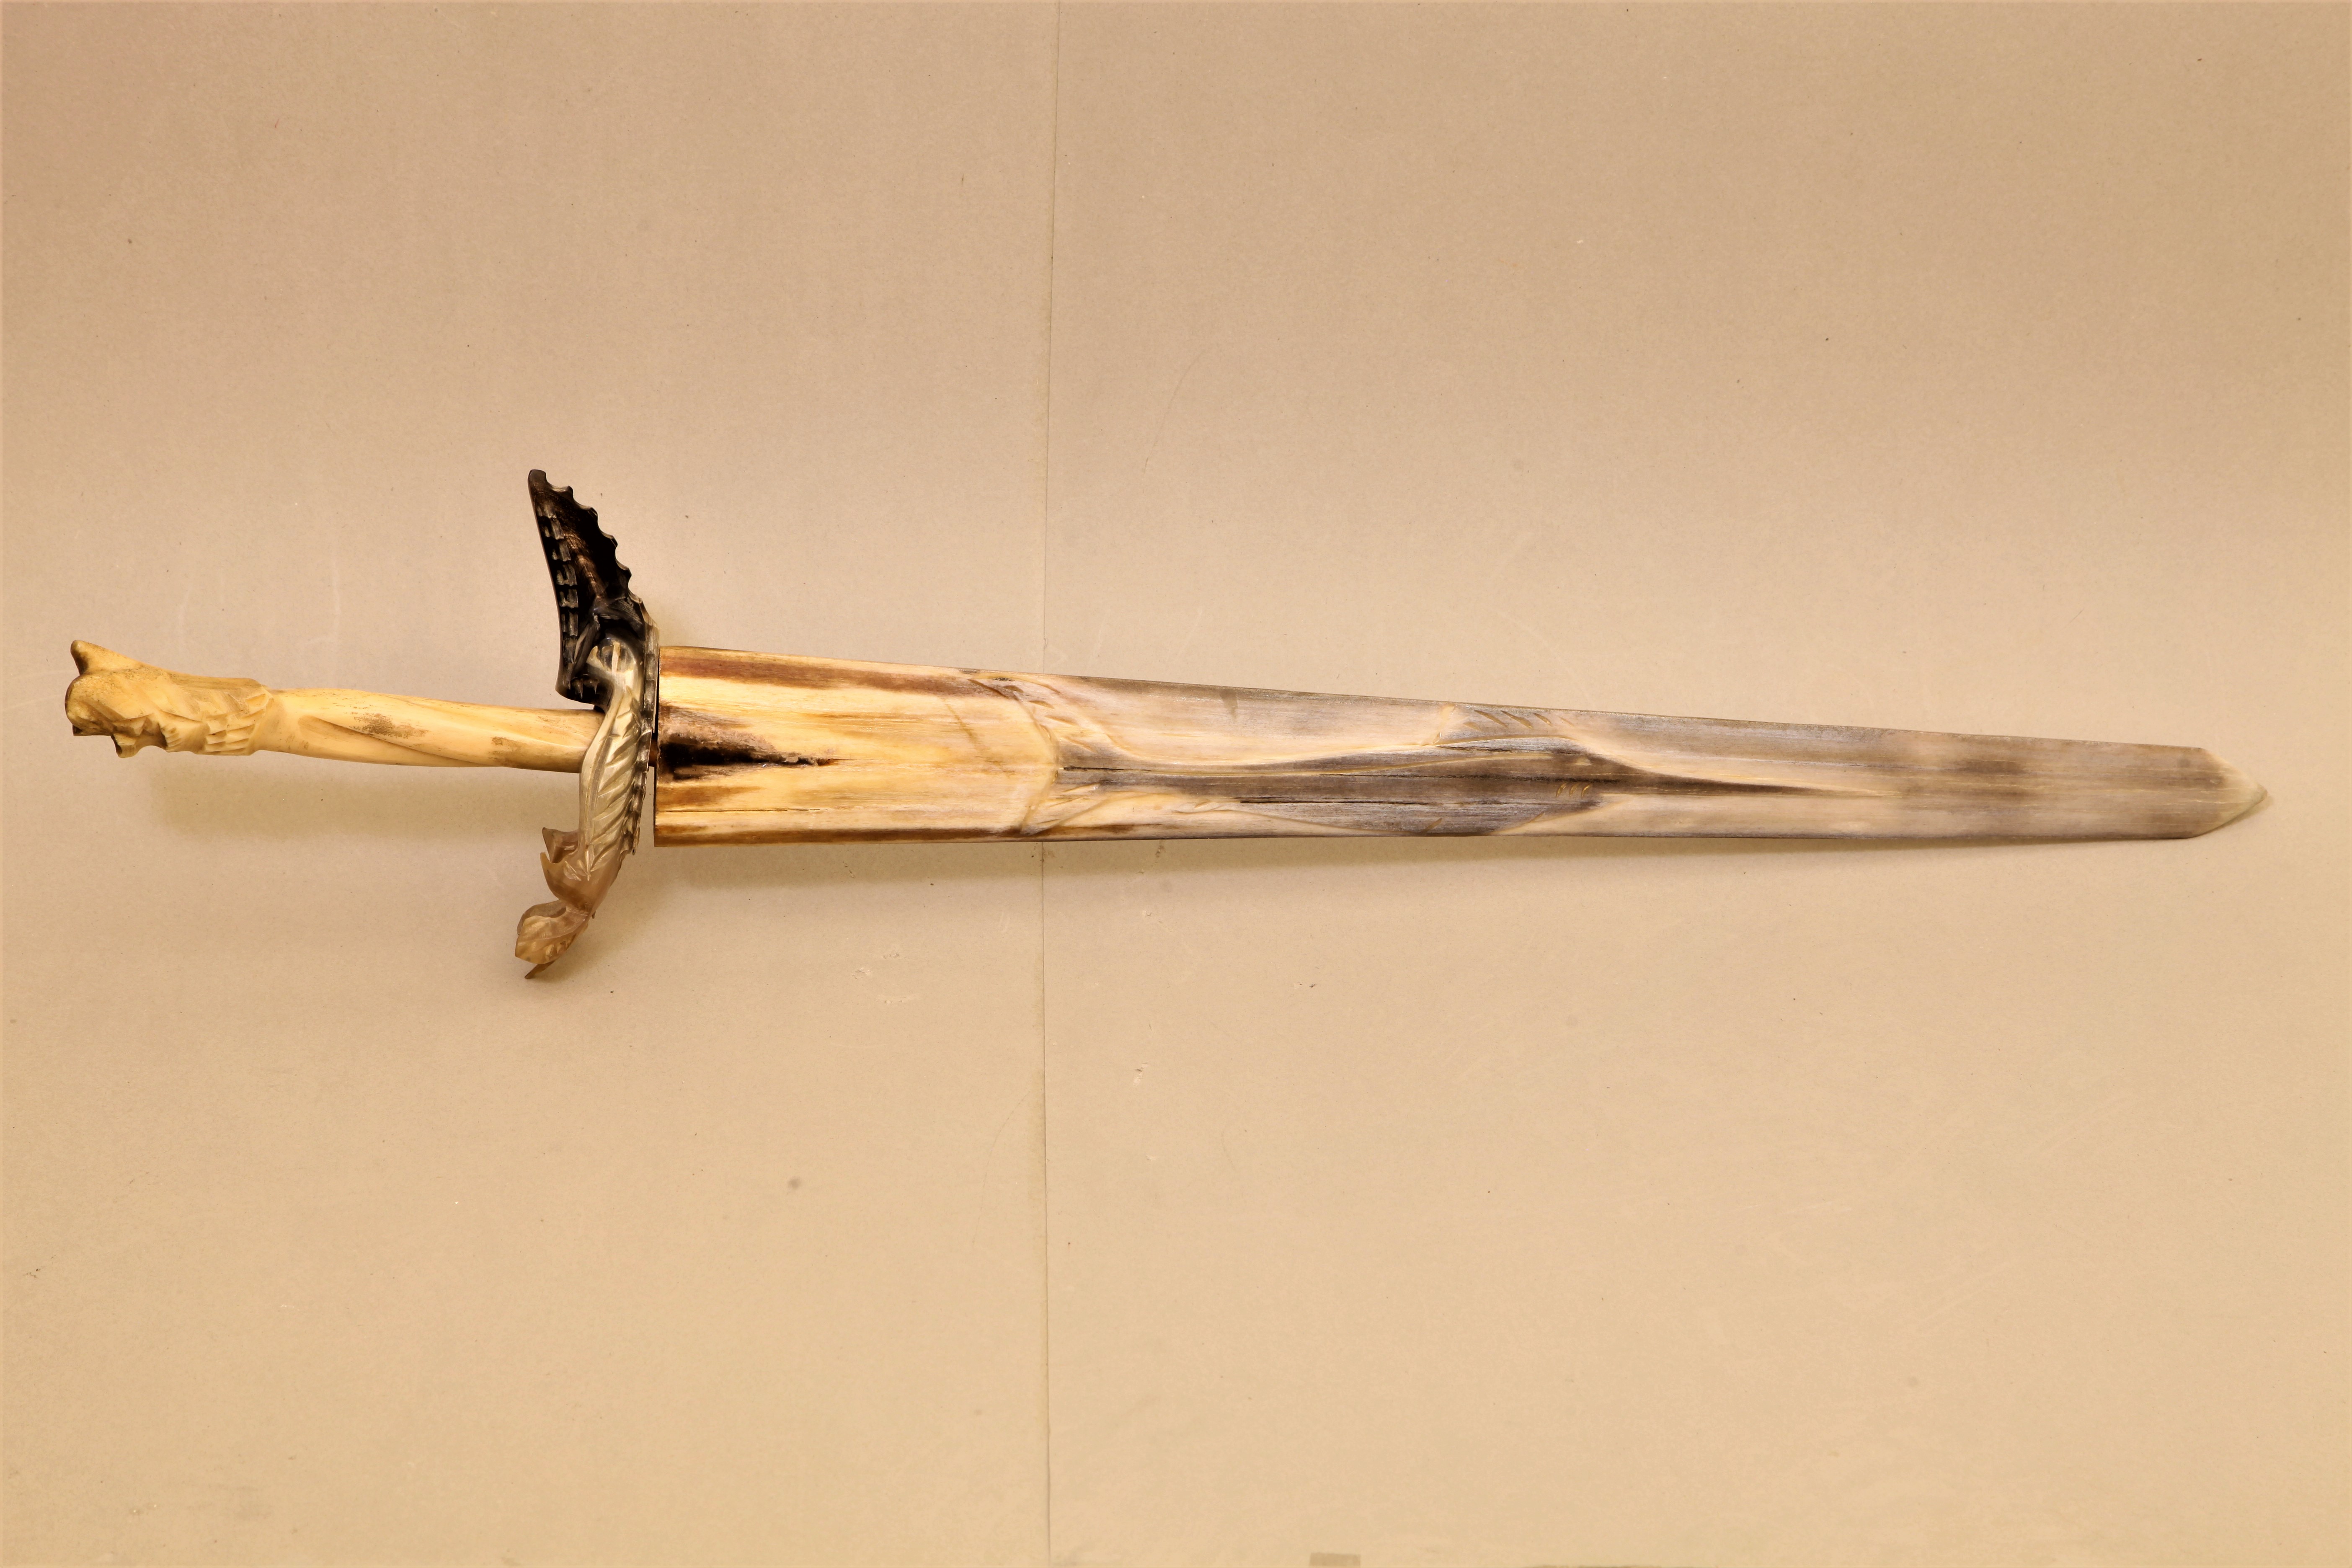 🔹نام شئ : شمشیر استخوان نهنگ از شیلی ( whale bone sword from chile)/موزه برادران امیدوار